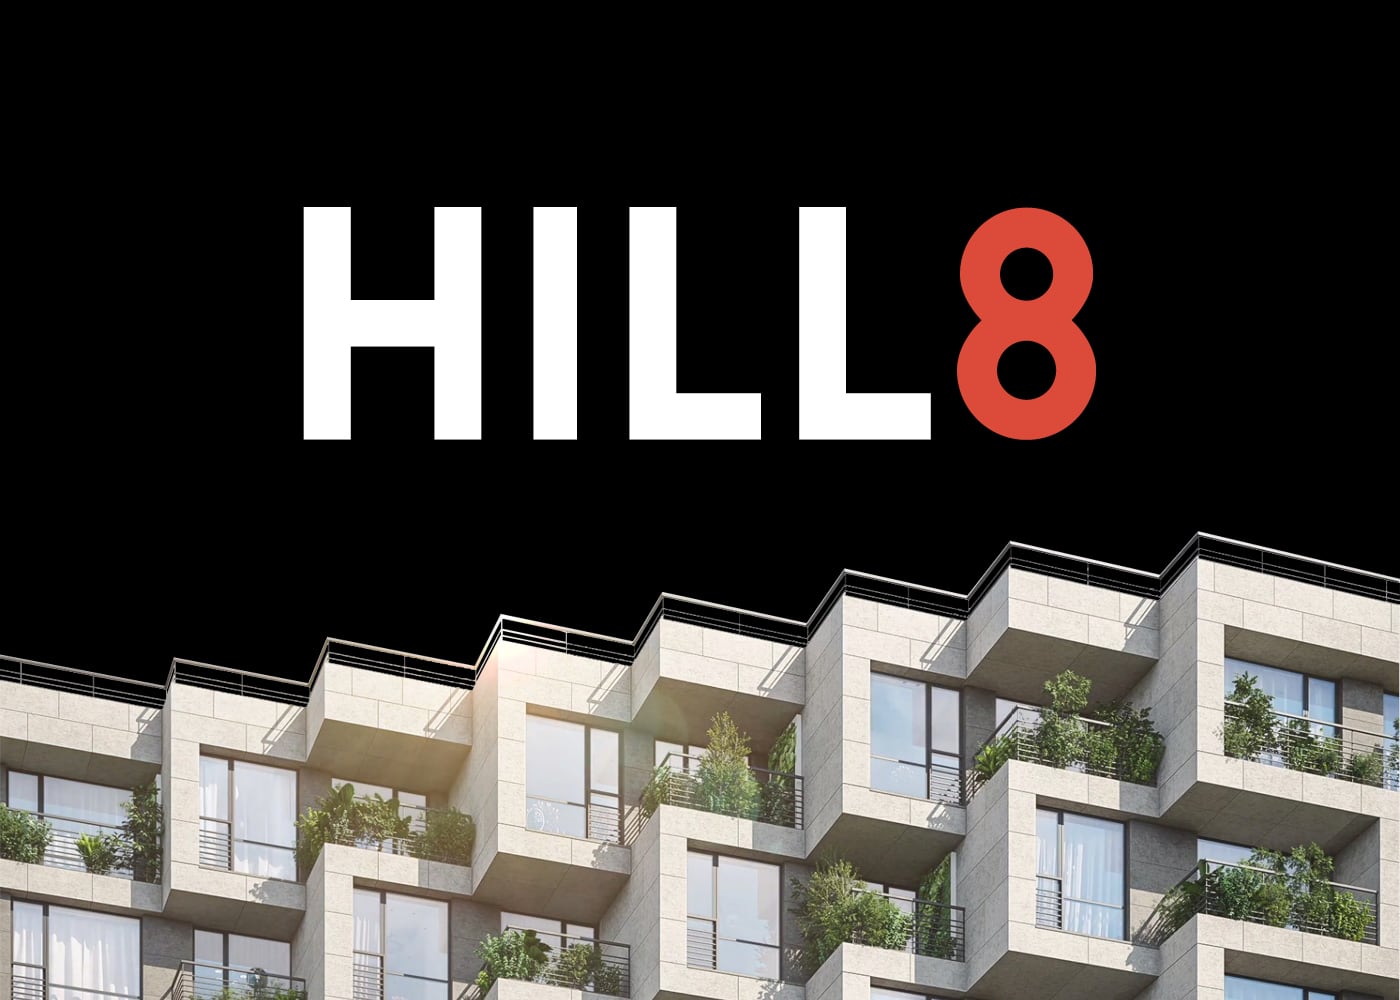 hill8_keys.jpg